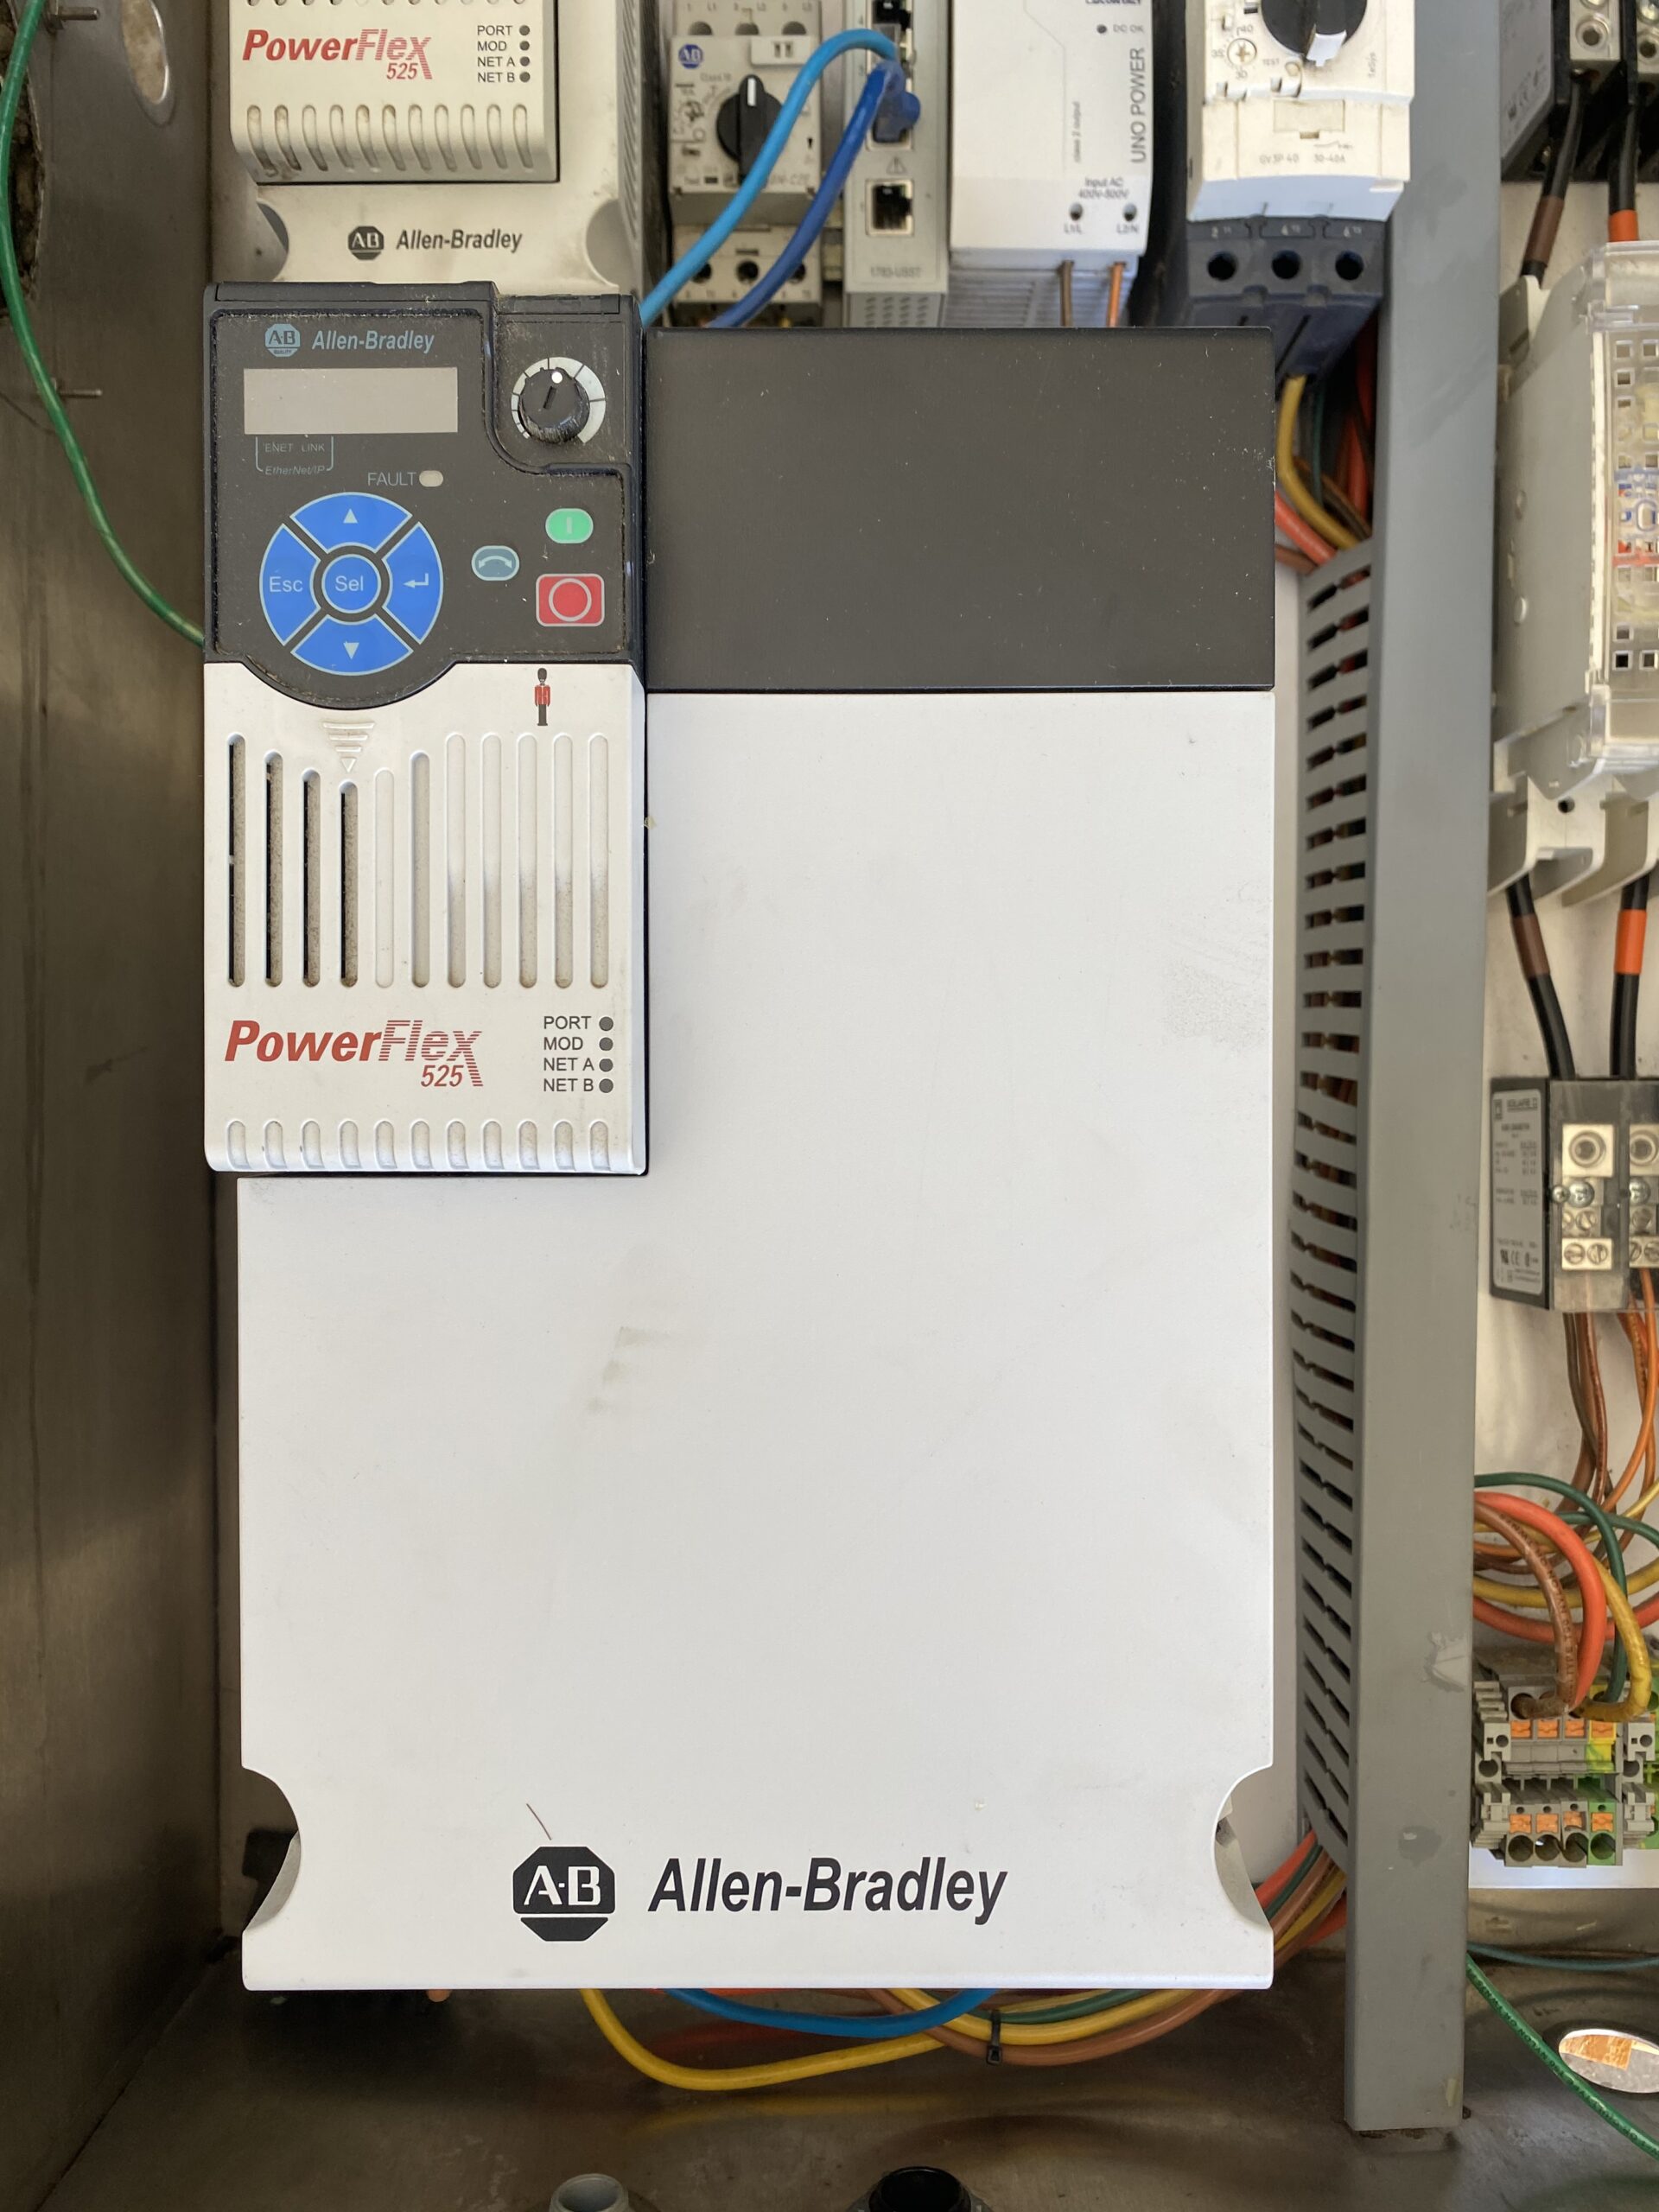 Allen-Bradley Powerflex 525